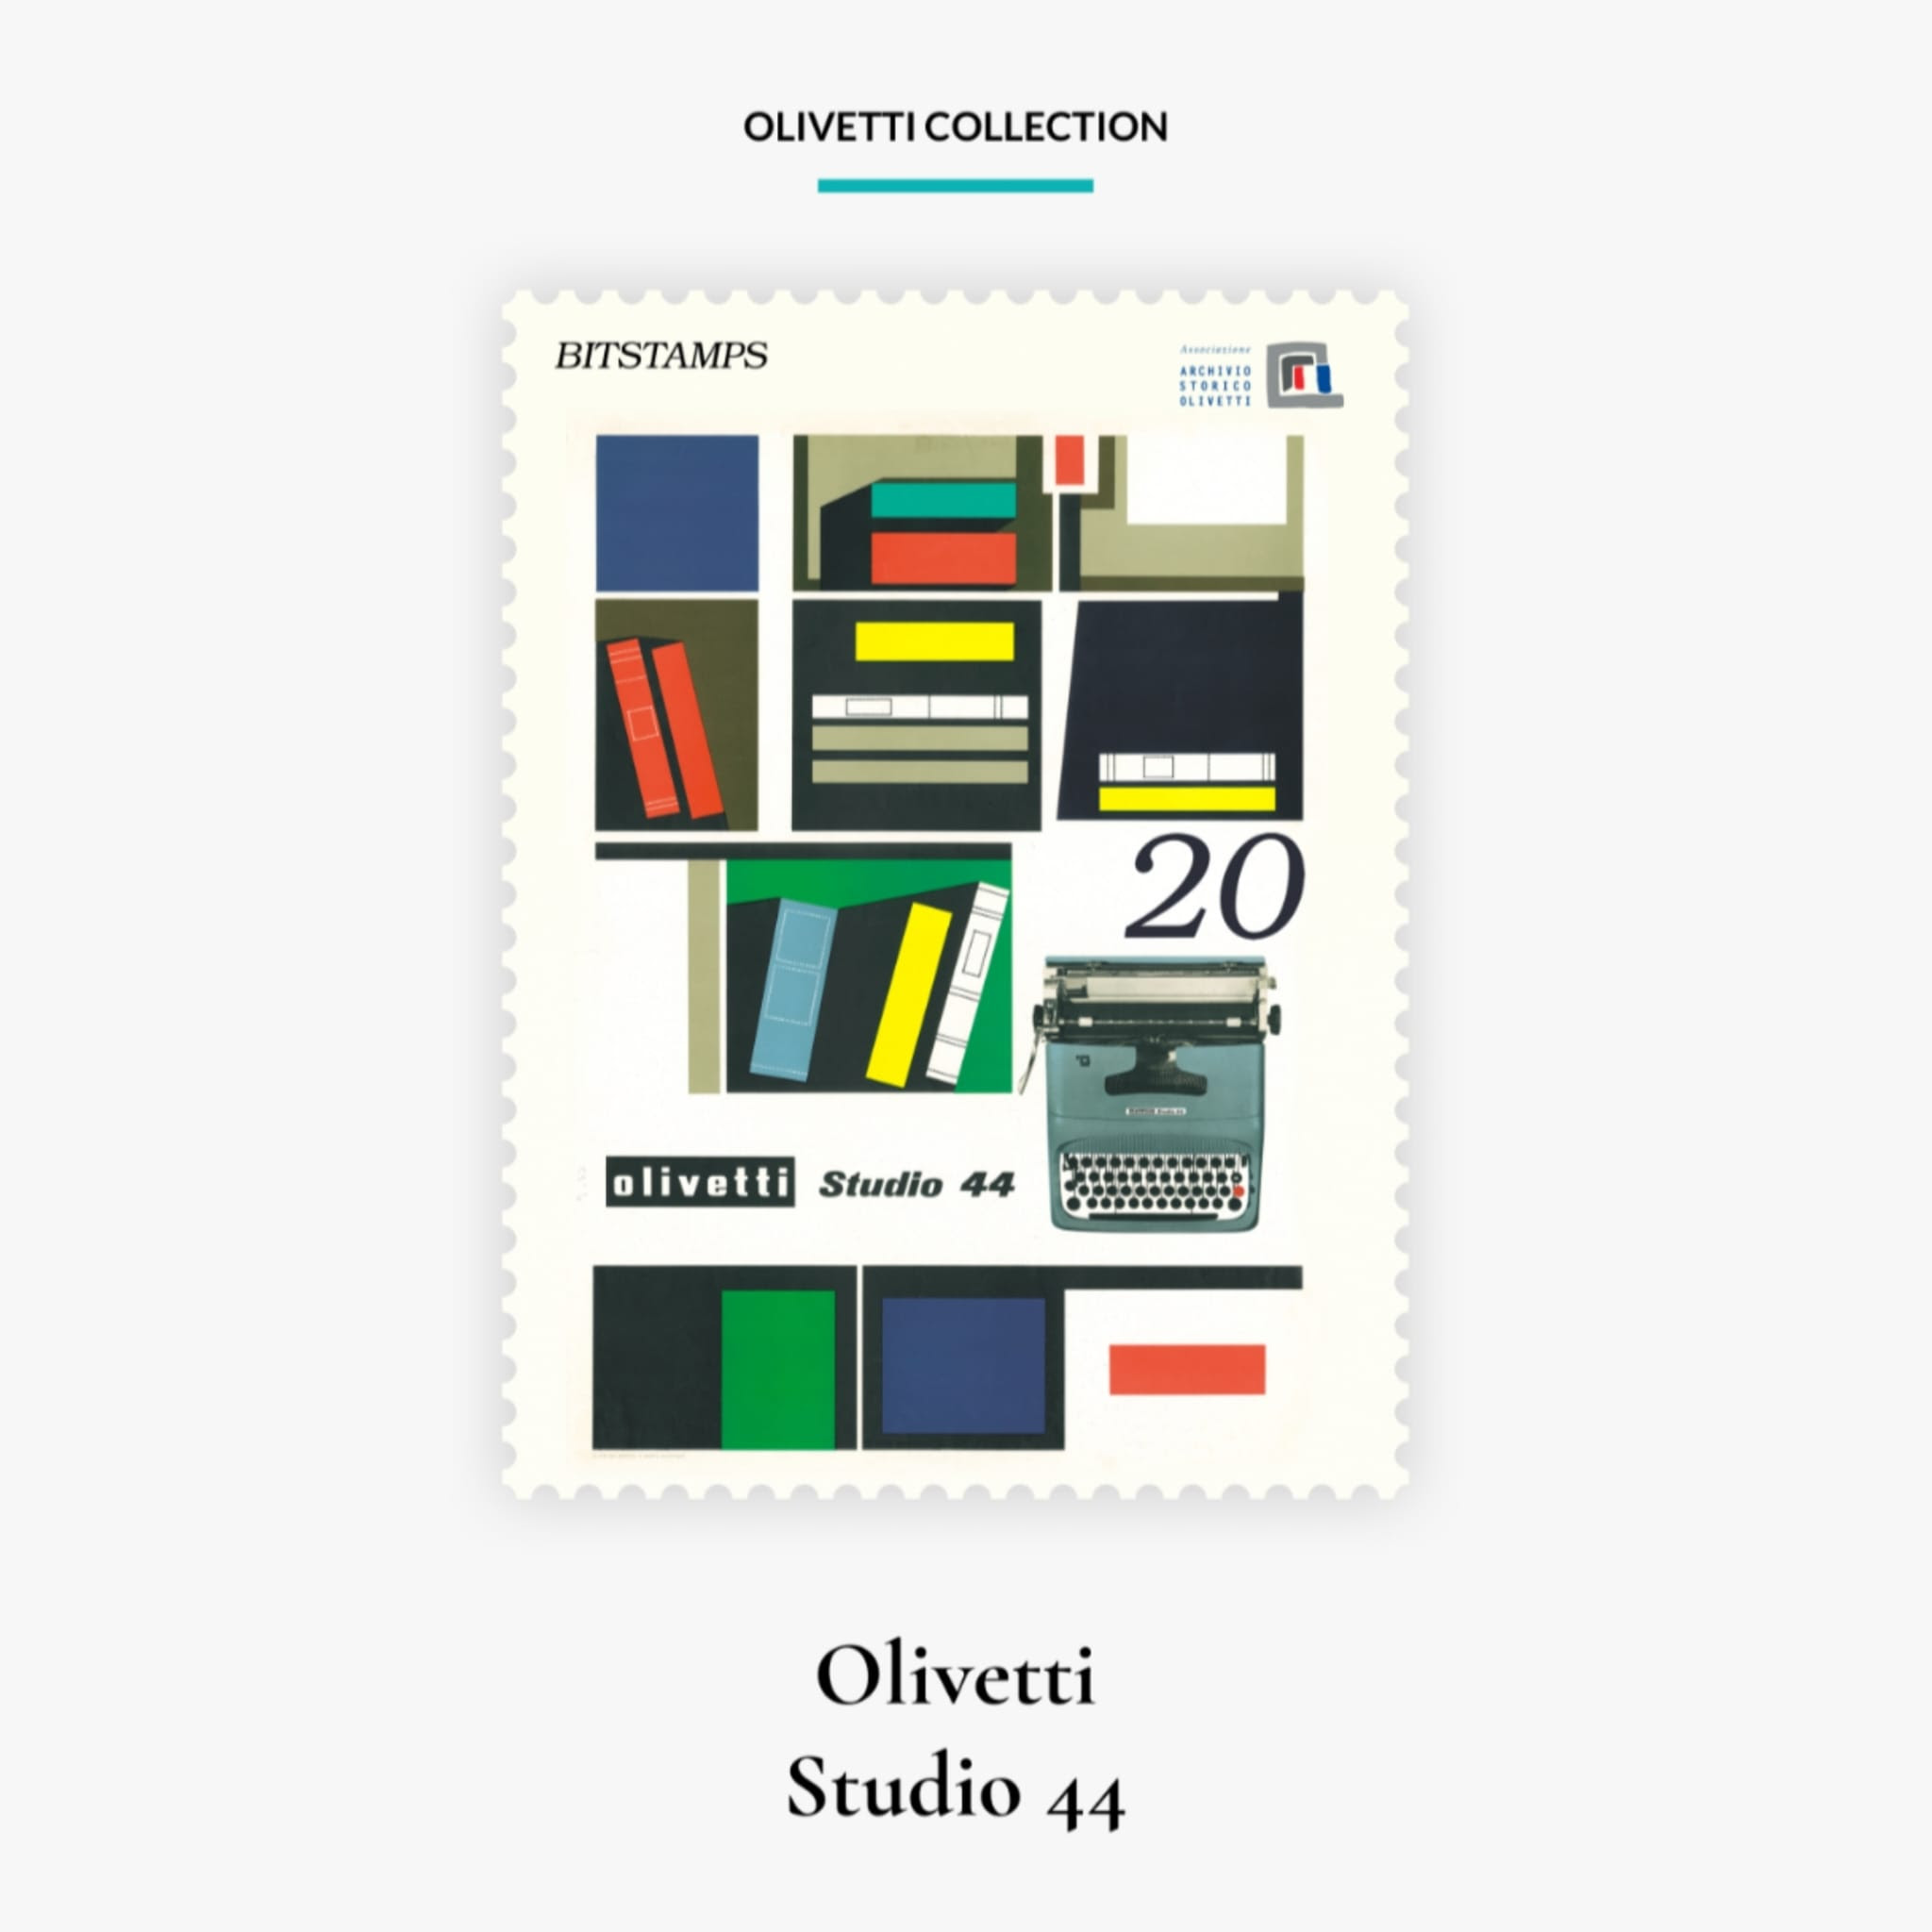 Un nuovo francobollo digitale della Olivetti Collection